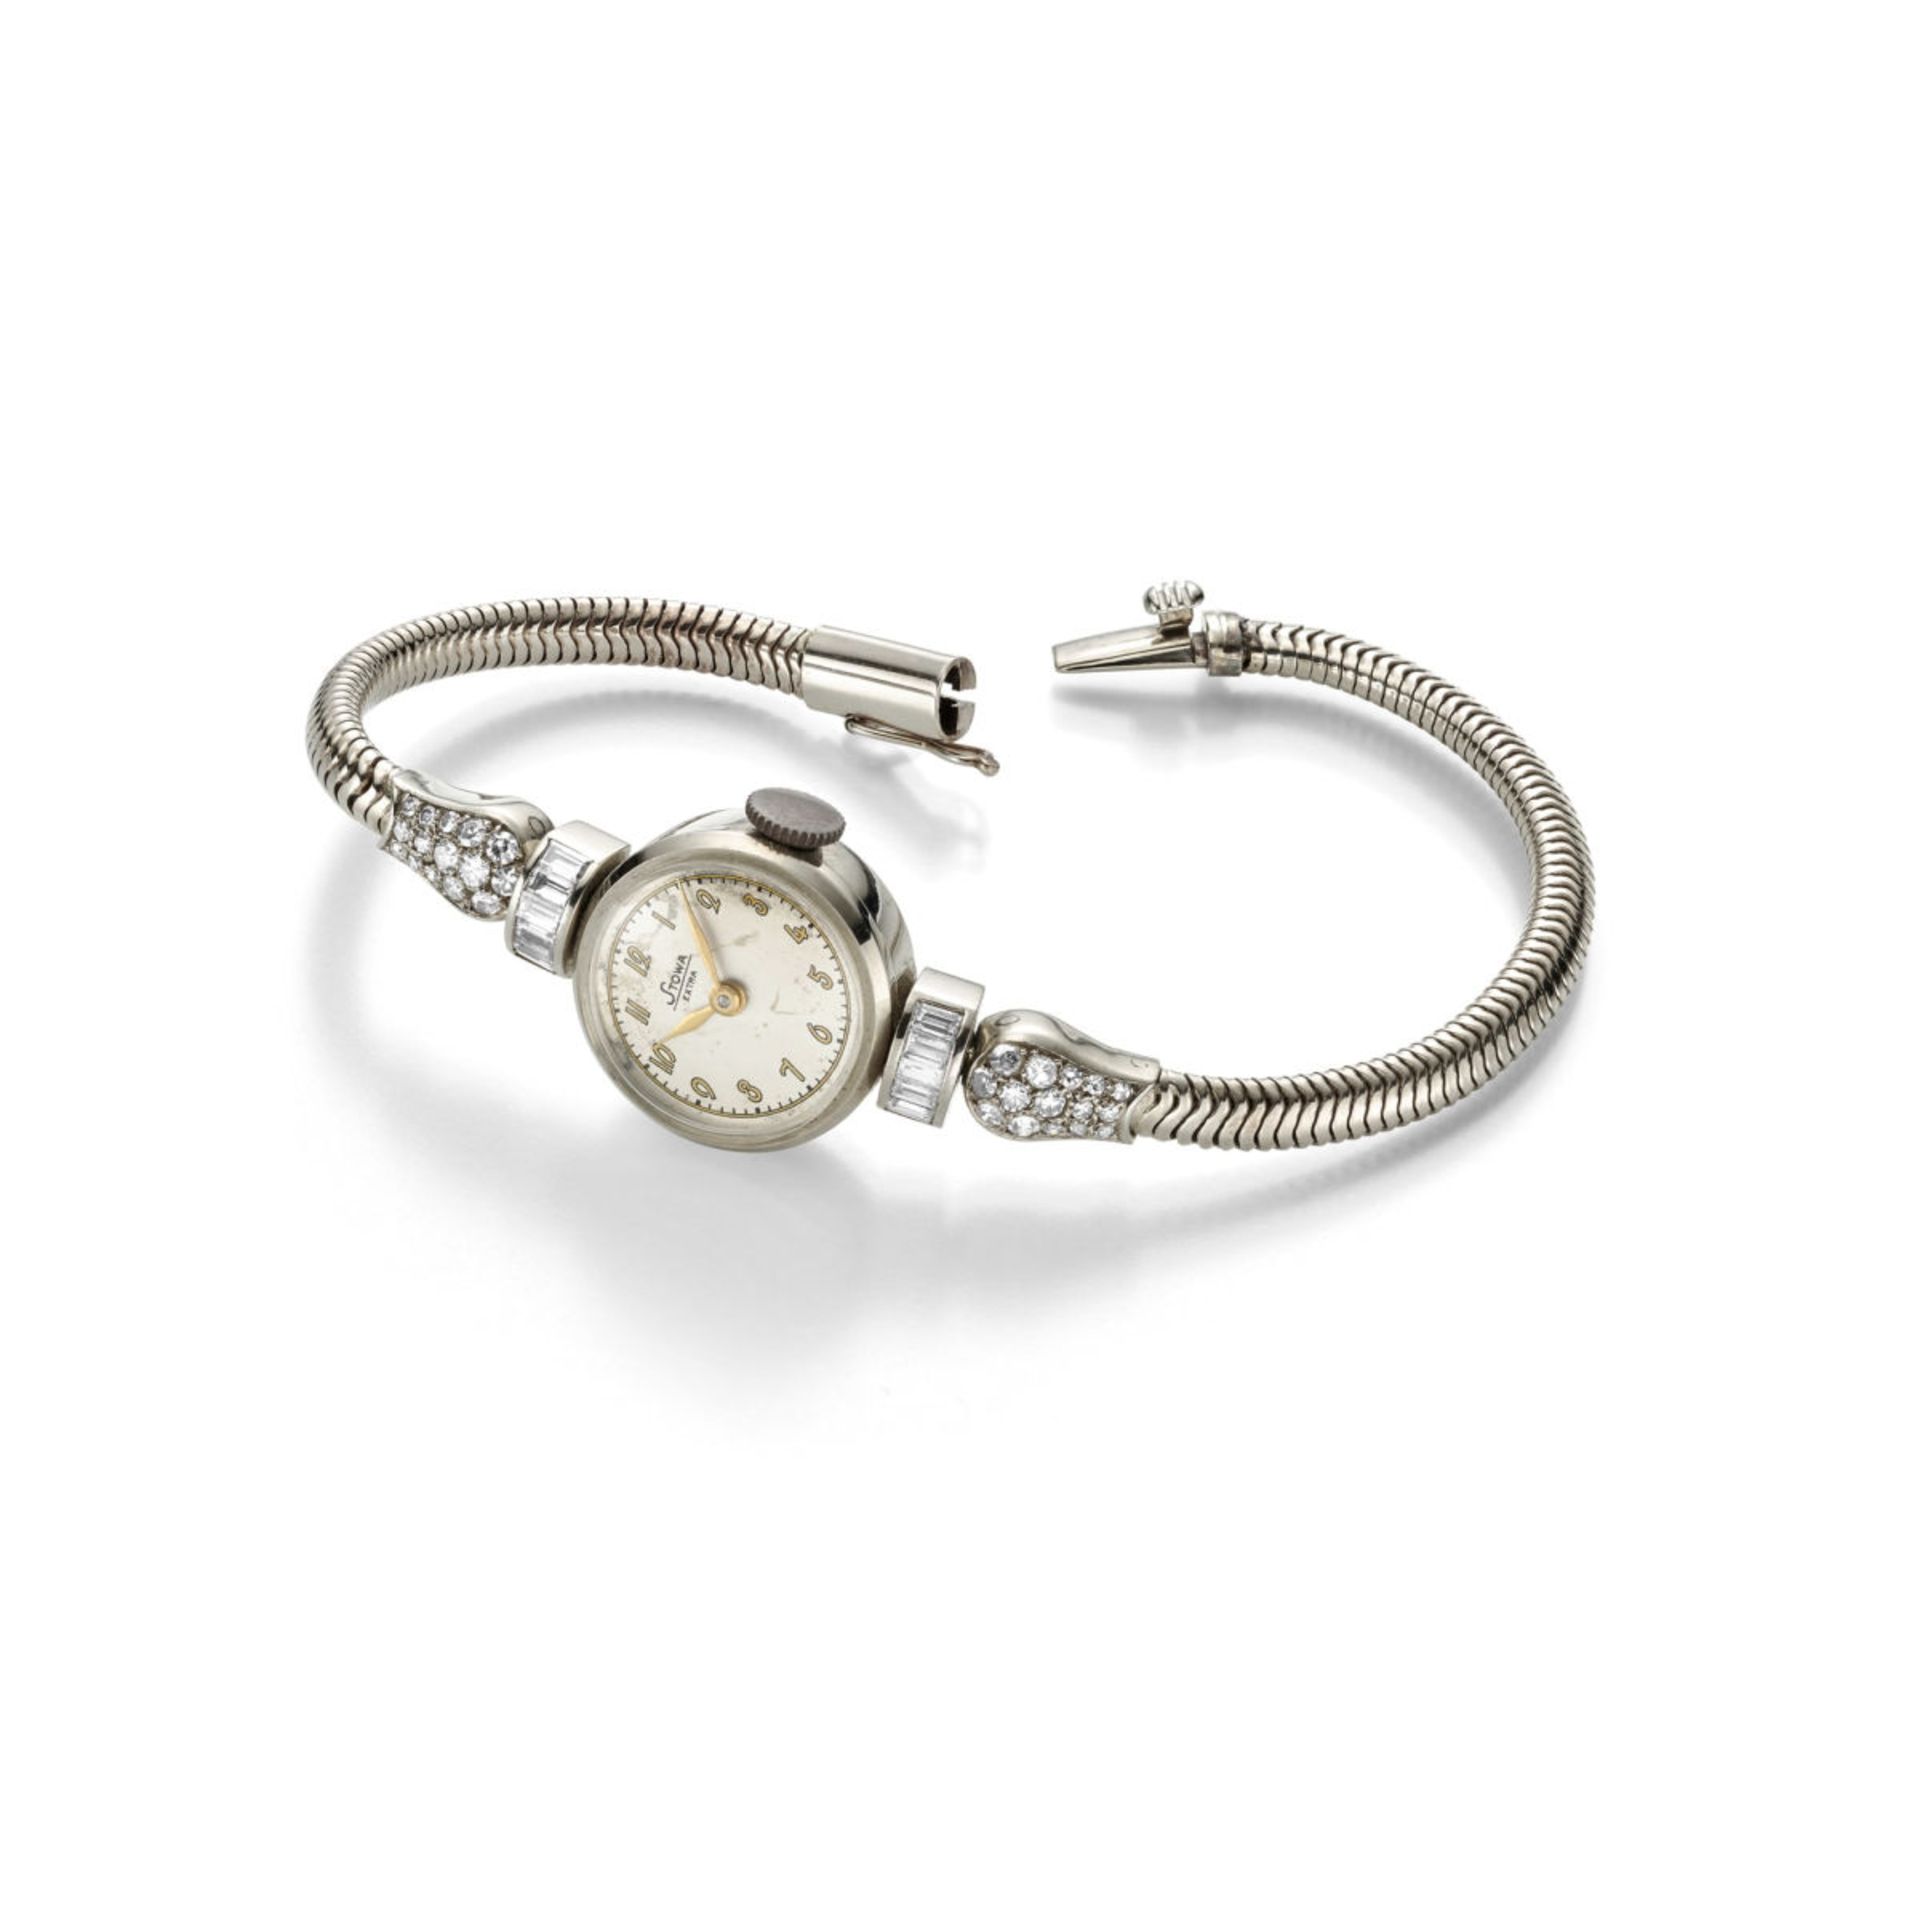 Stowa jewellery watch with diamonds 